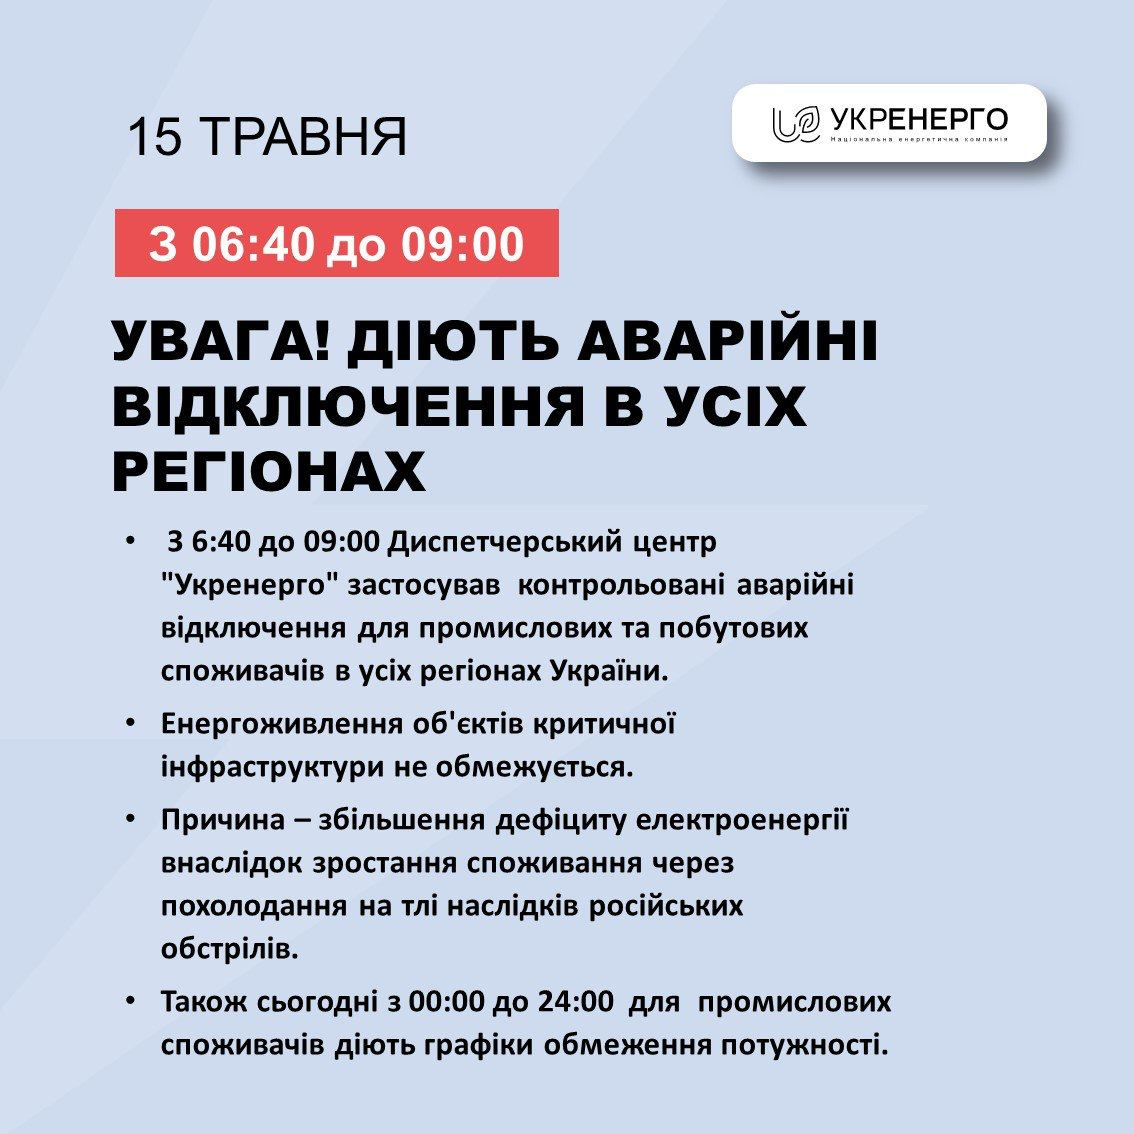 Во всех украинских областях сегодня, 15 мая, вводятся аварийные отключения промышленных и бытовых потребителей электроэнергии